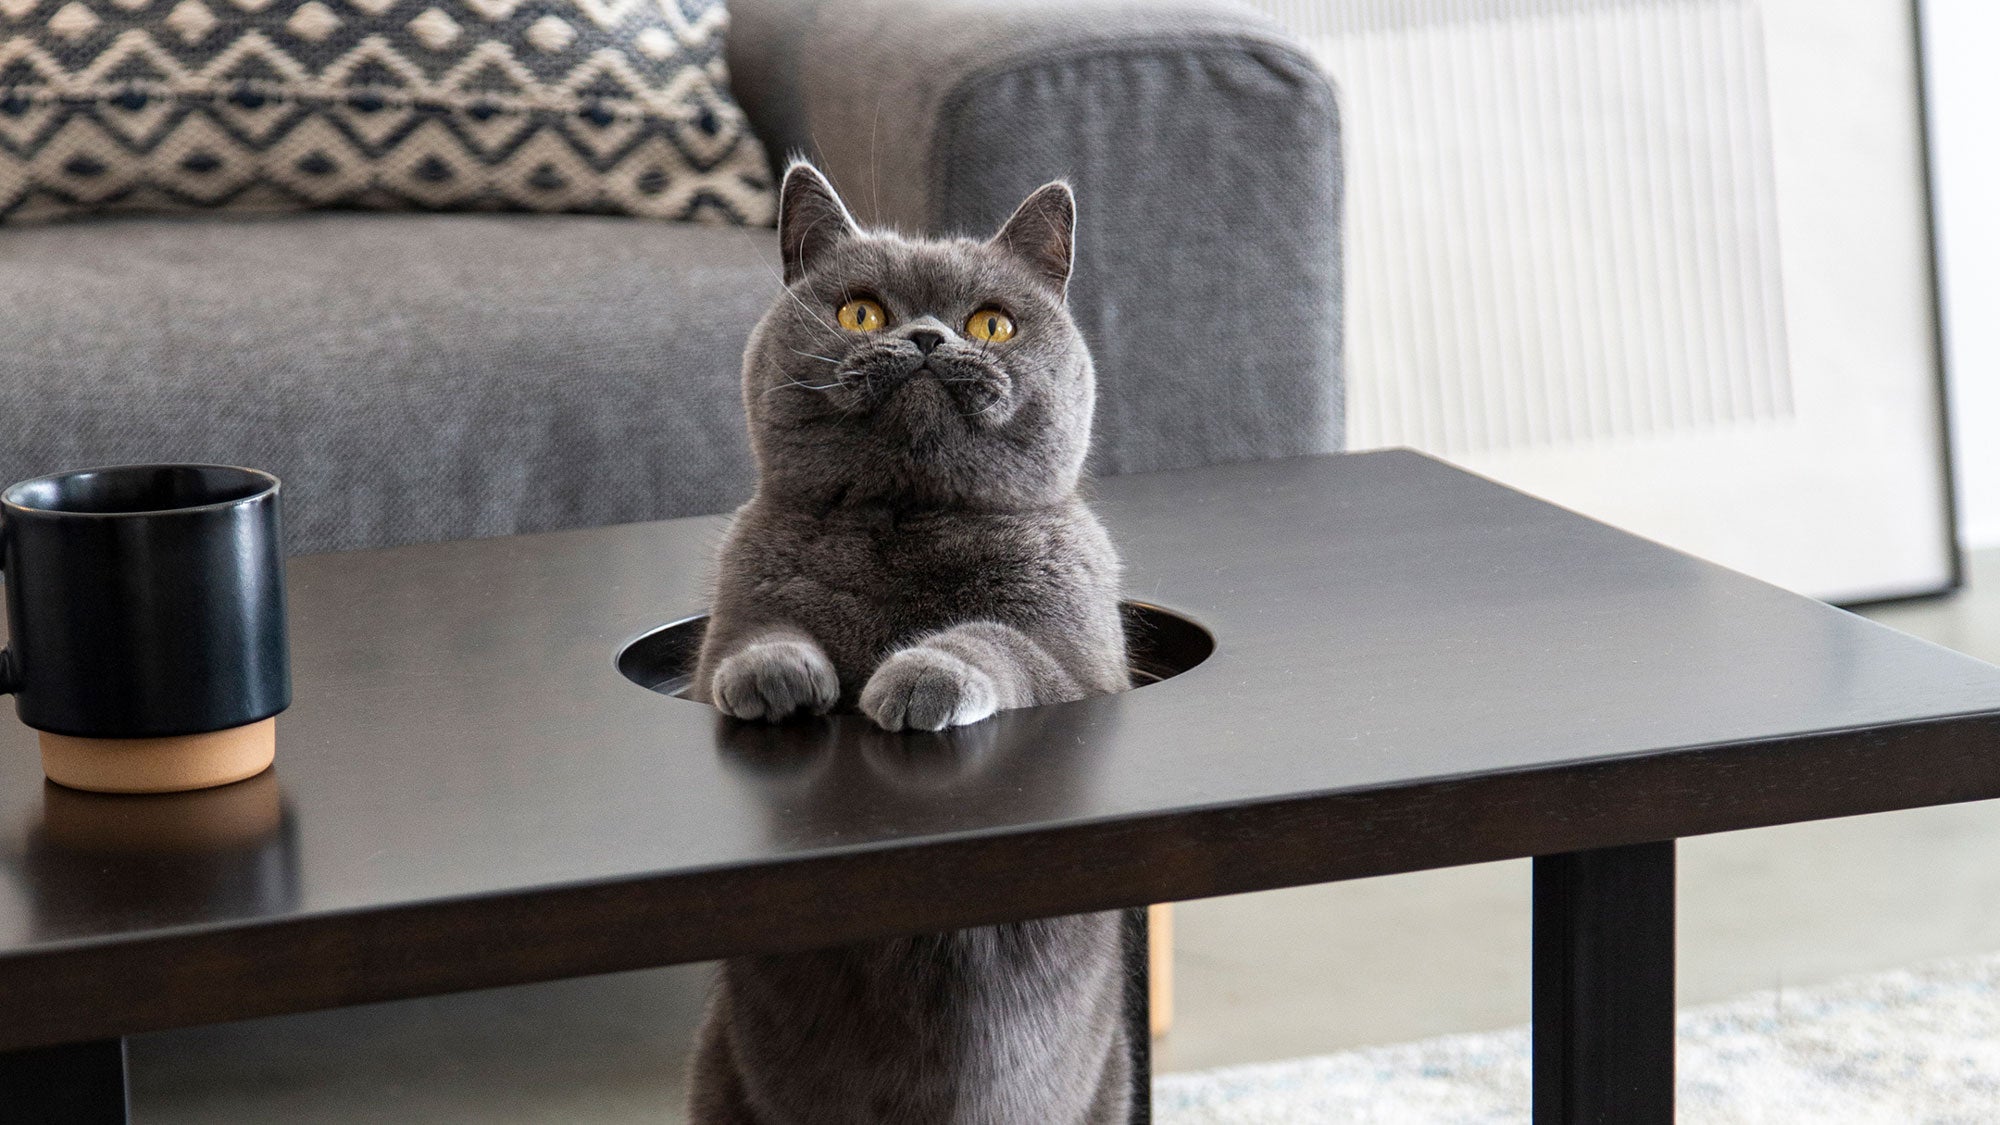 KANADEMONOの猫インテリアNekodamonoシリーズのネコ穴付きローテーブル